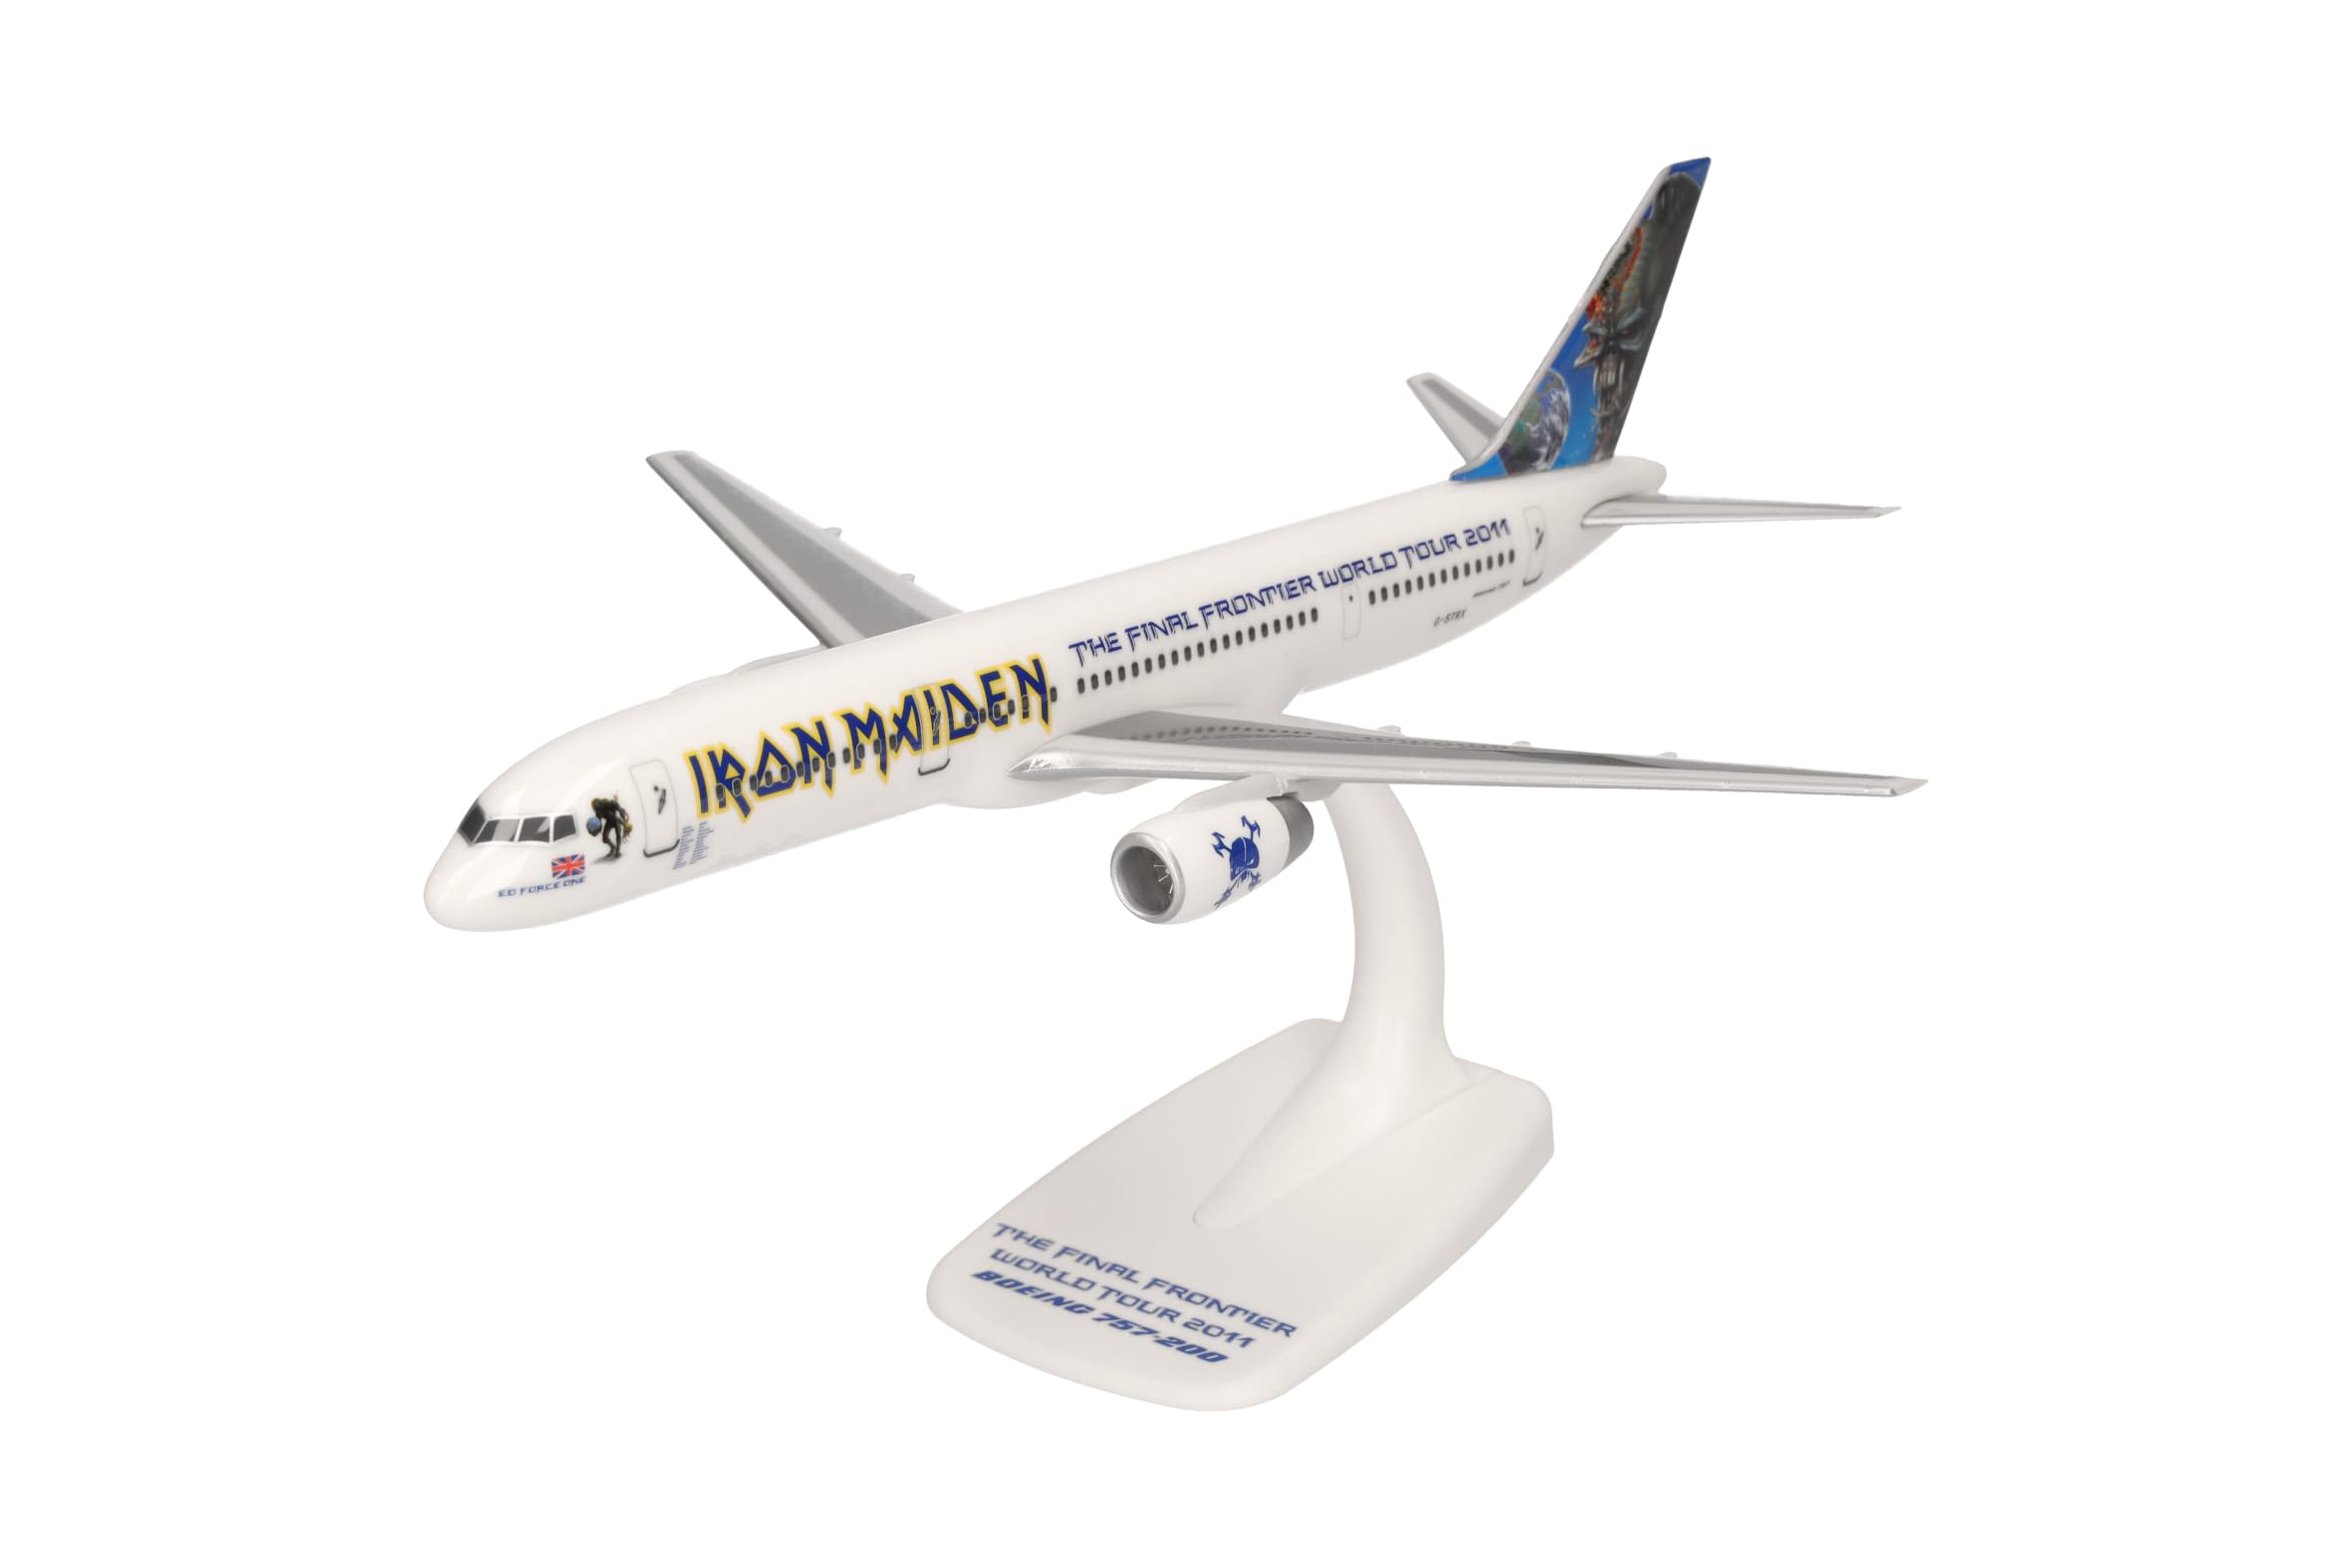 Herpa Snap-Fit Modellflugzeug Iron Maiden (Astraeus) Boeing 757-200 "Ed Force One The Final Frontier World Tour 2011 – G-STRX, Miniatur im Maßstab 1:200, Sammlerstück, Modell mit Standfuß, Kunststoff